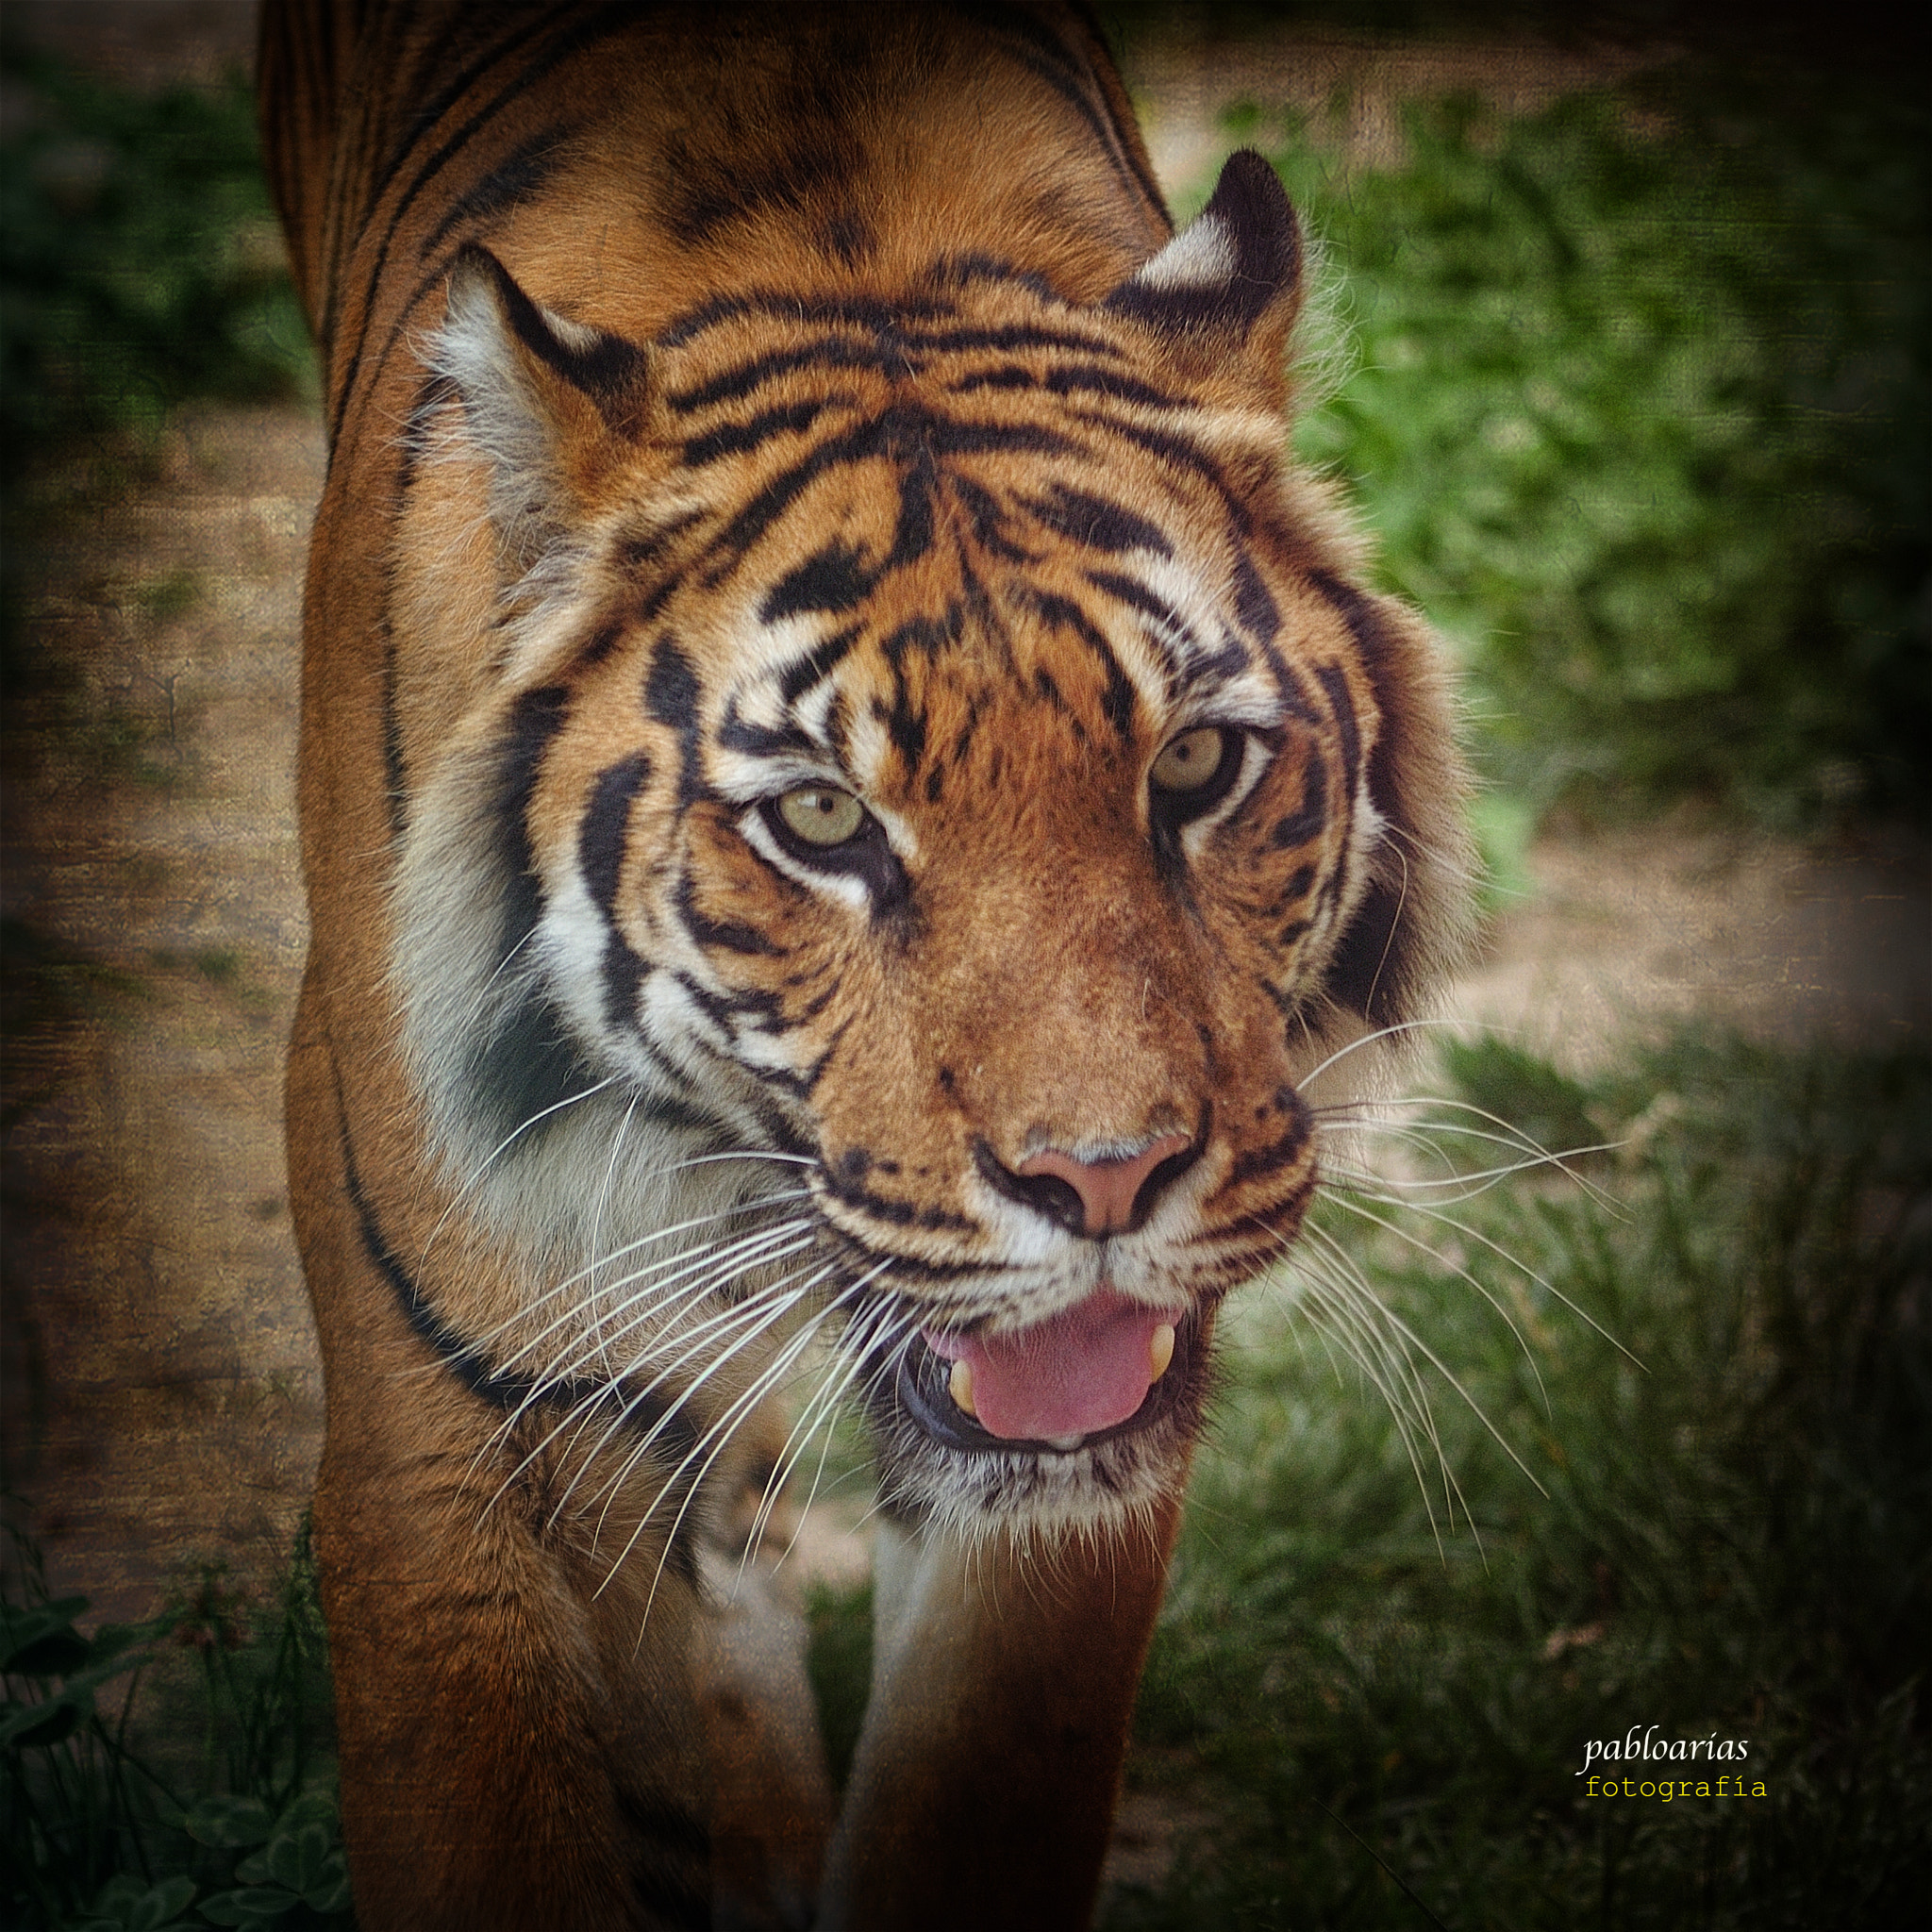 Nikon D300 + Tamron SP 70-300mm F4-5.6 Di VC USD sample photo. Panthera tigris tigris photography